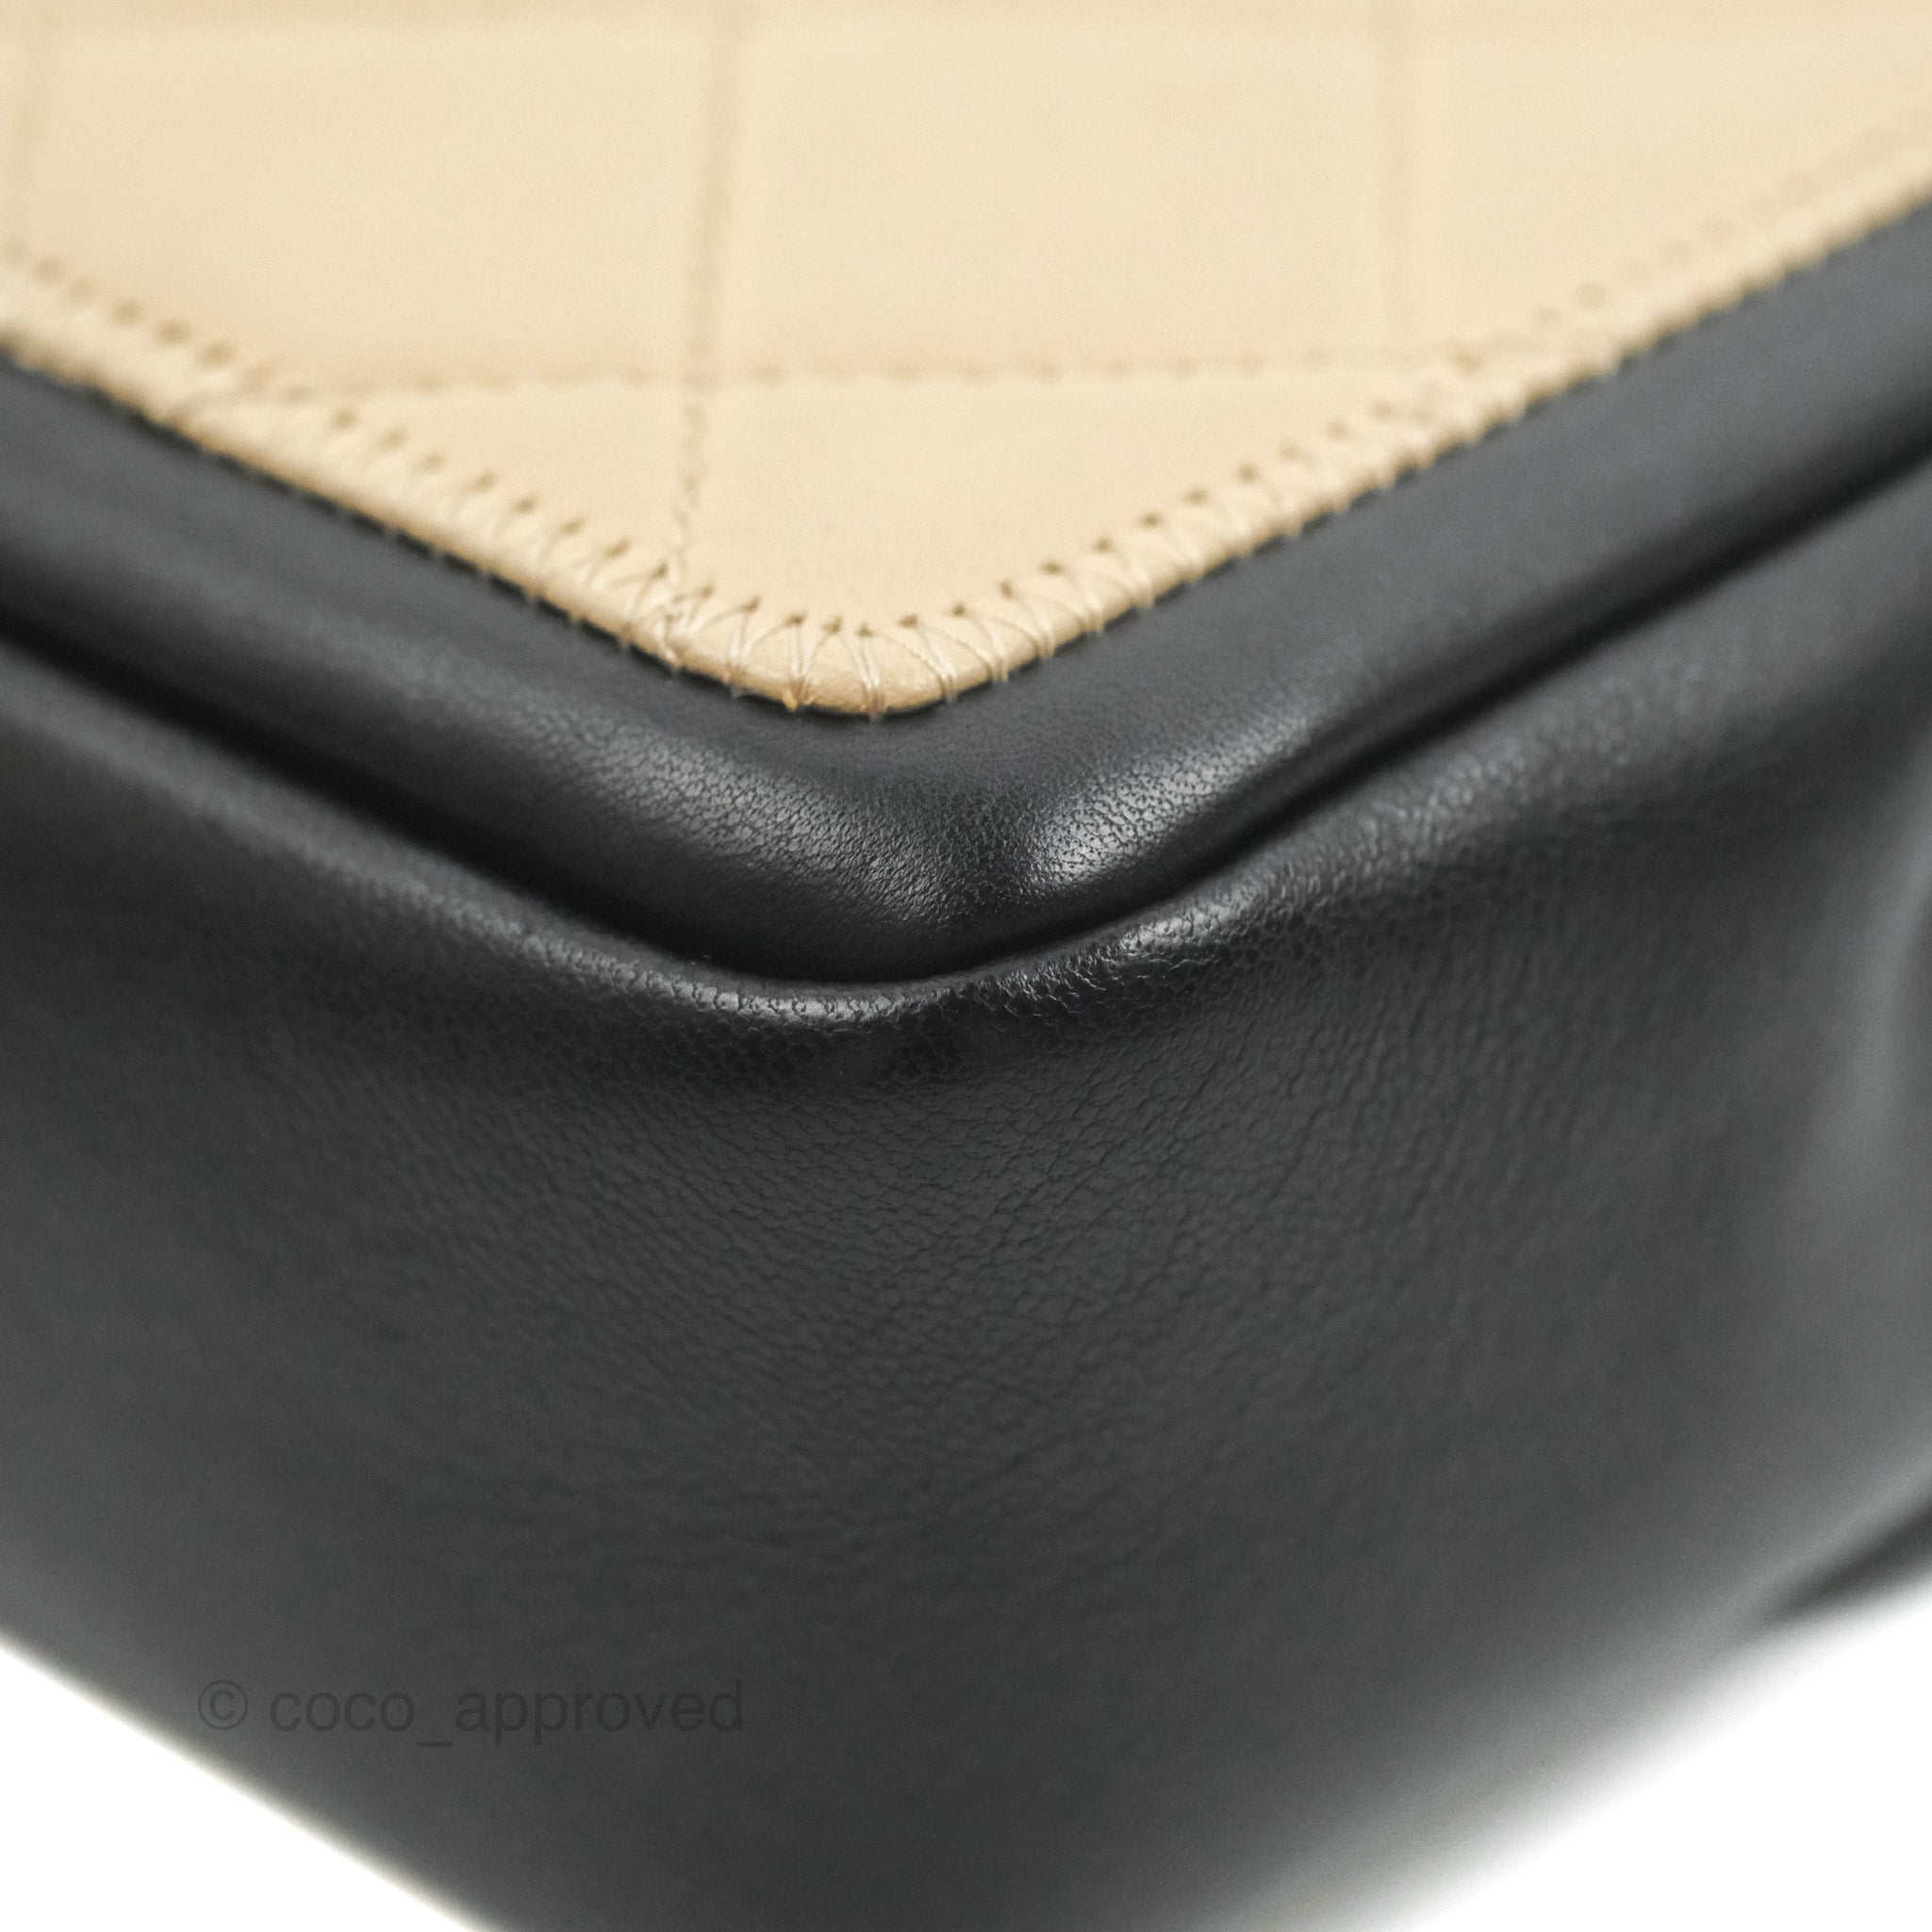 CHANEL Quilted Calfskin Flap Bag Gold Hardware, 2021 - Bellisa